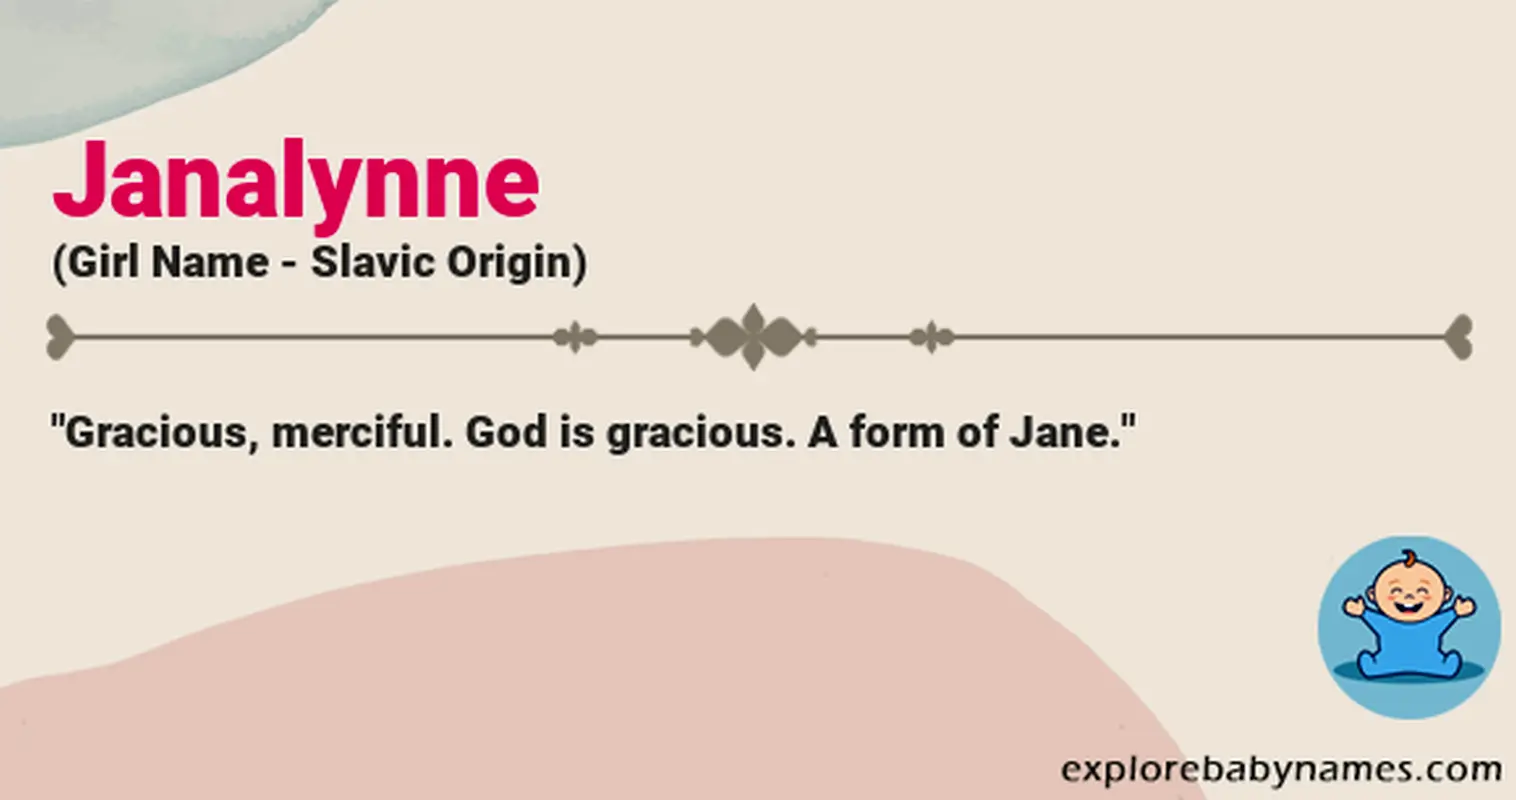 Meaning of Janalynne